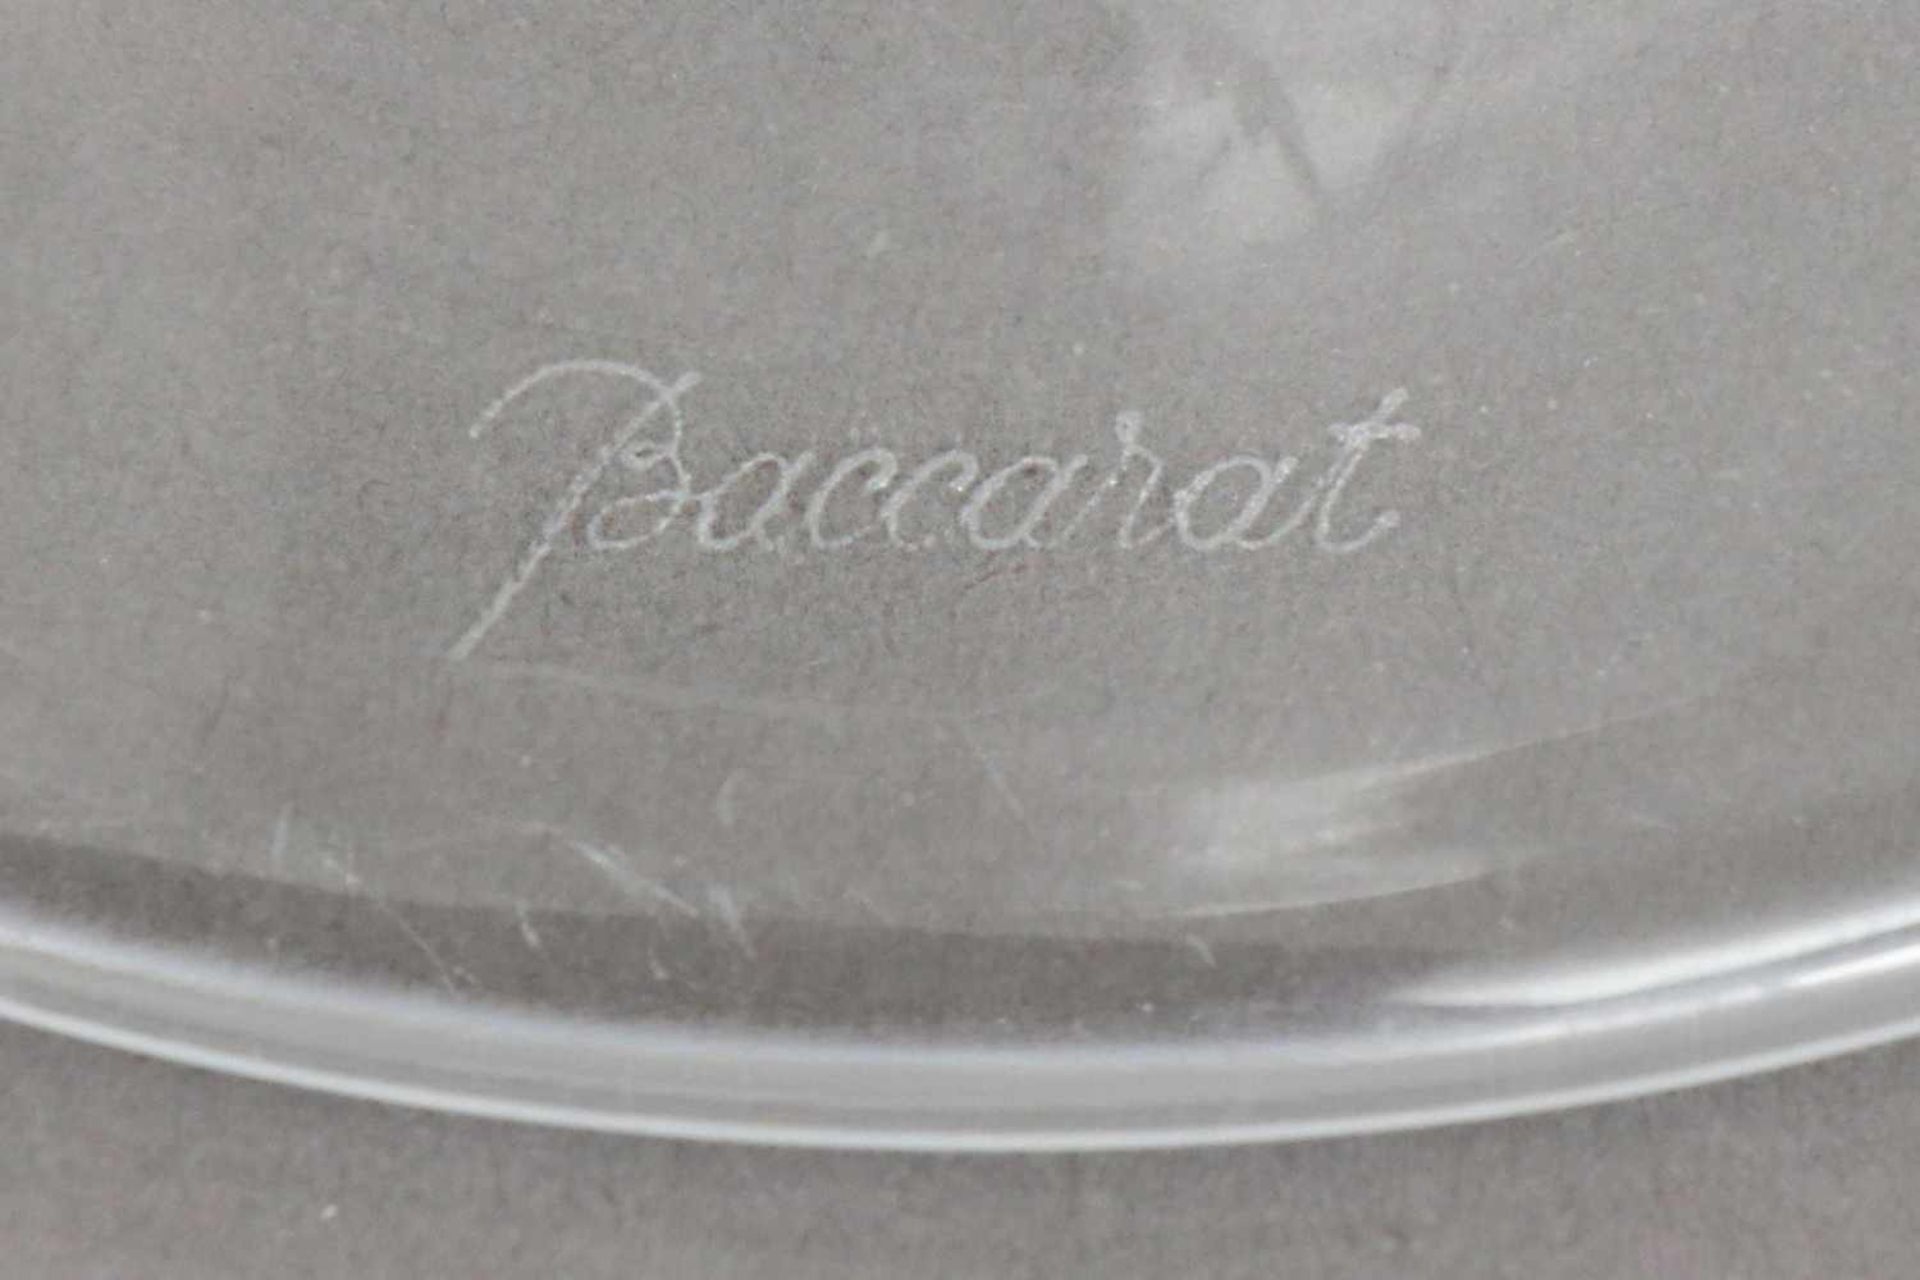 BACCARAT Kristallvase trichterförmiger Korpus, Ätzdekor mit Ranken, am Boden Ätzmarke, H ca. 22cm - Bild 3 aus 3